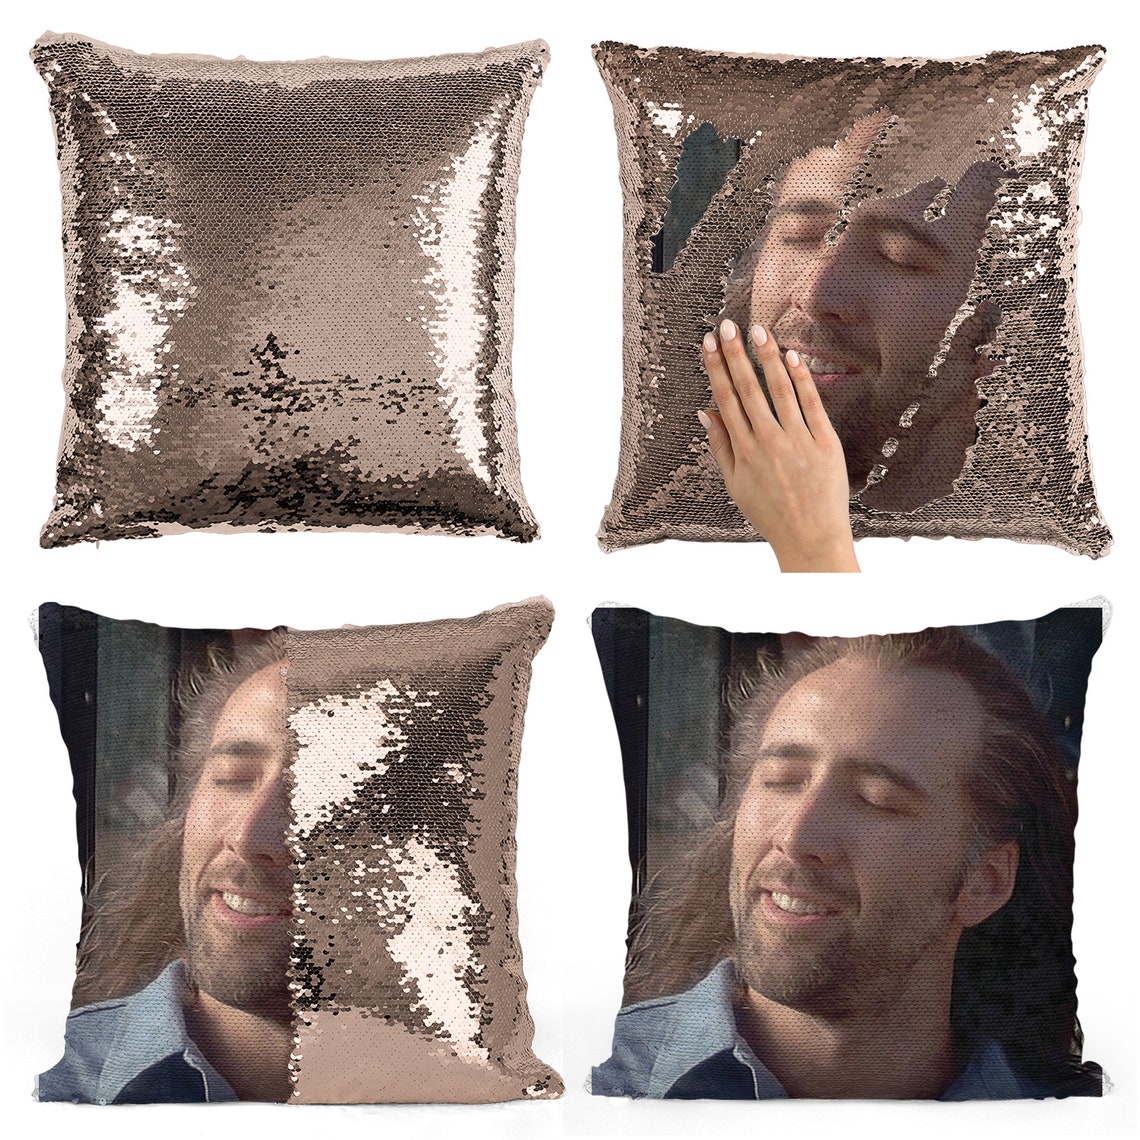 The Nicolas Cage Con Air sequin pillow sequin Pillowcase Two | Etsy